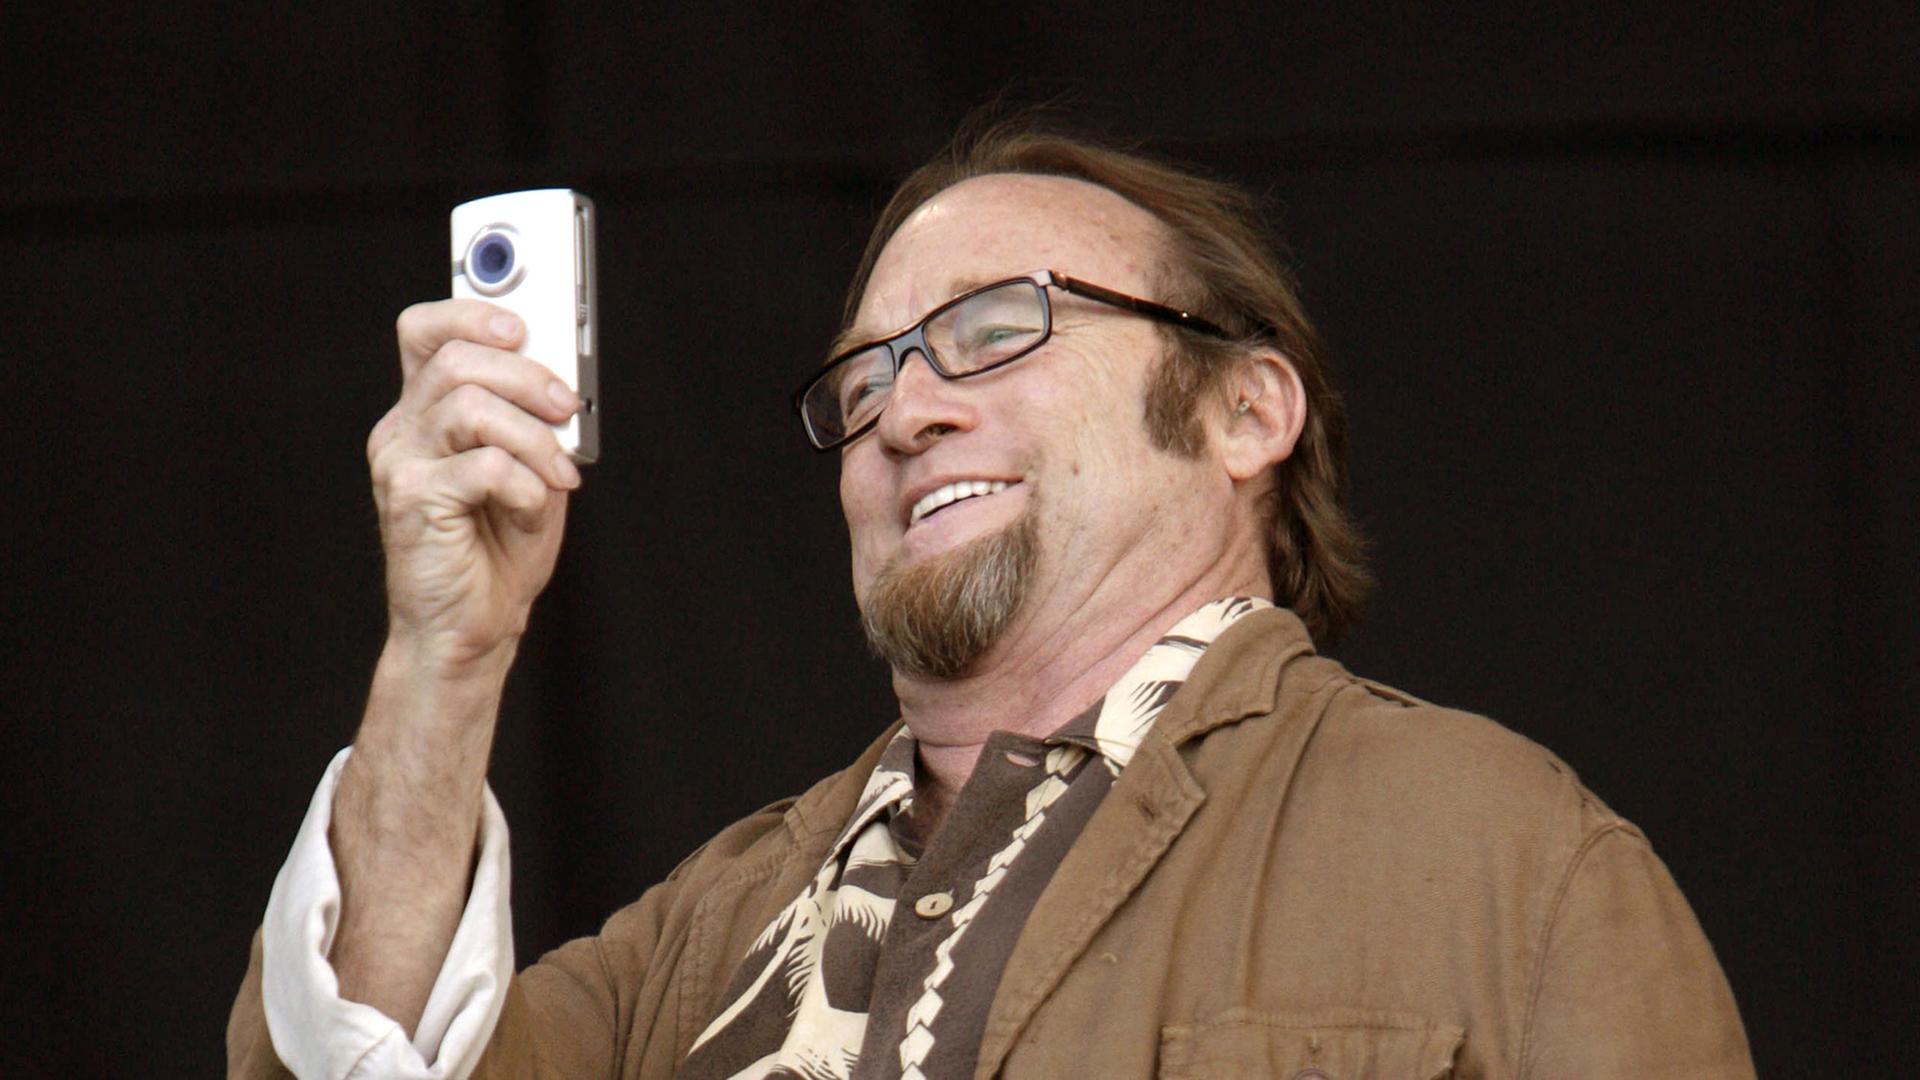 Stephen Still fotogratiert bei einem Auftritt in England 2009 mit einem Handy